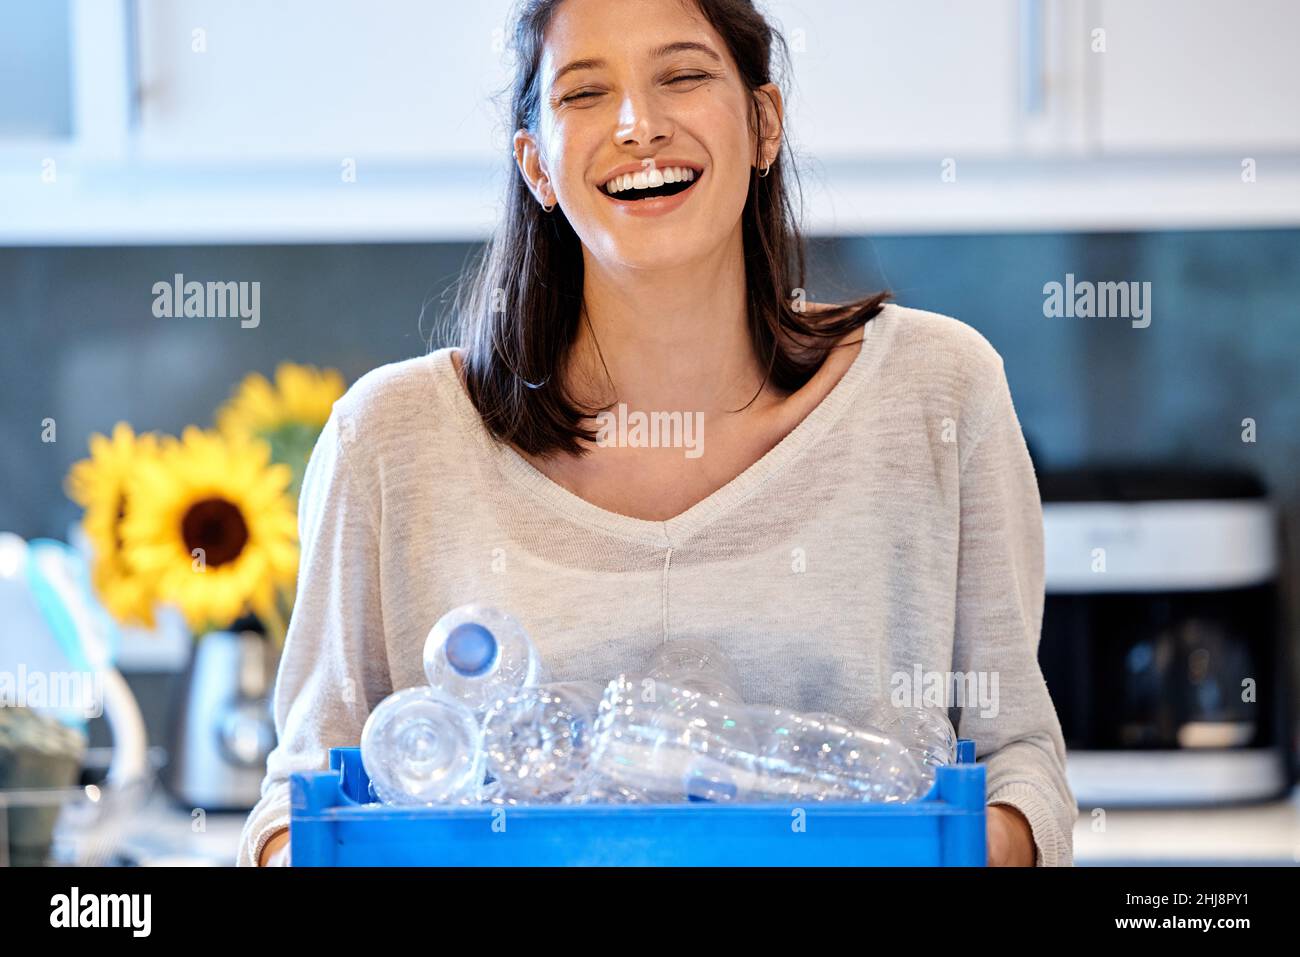 Mamá liderando por ejemplo. Foto de una mujer joven que se prepara para reciclar algunas botellas en casa. Foto de stock